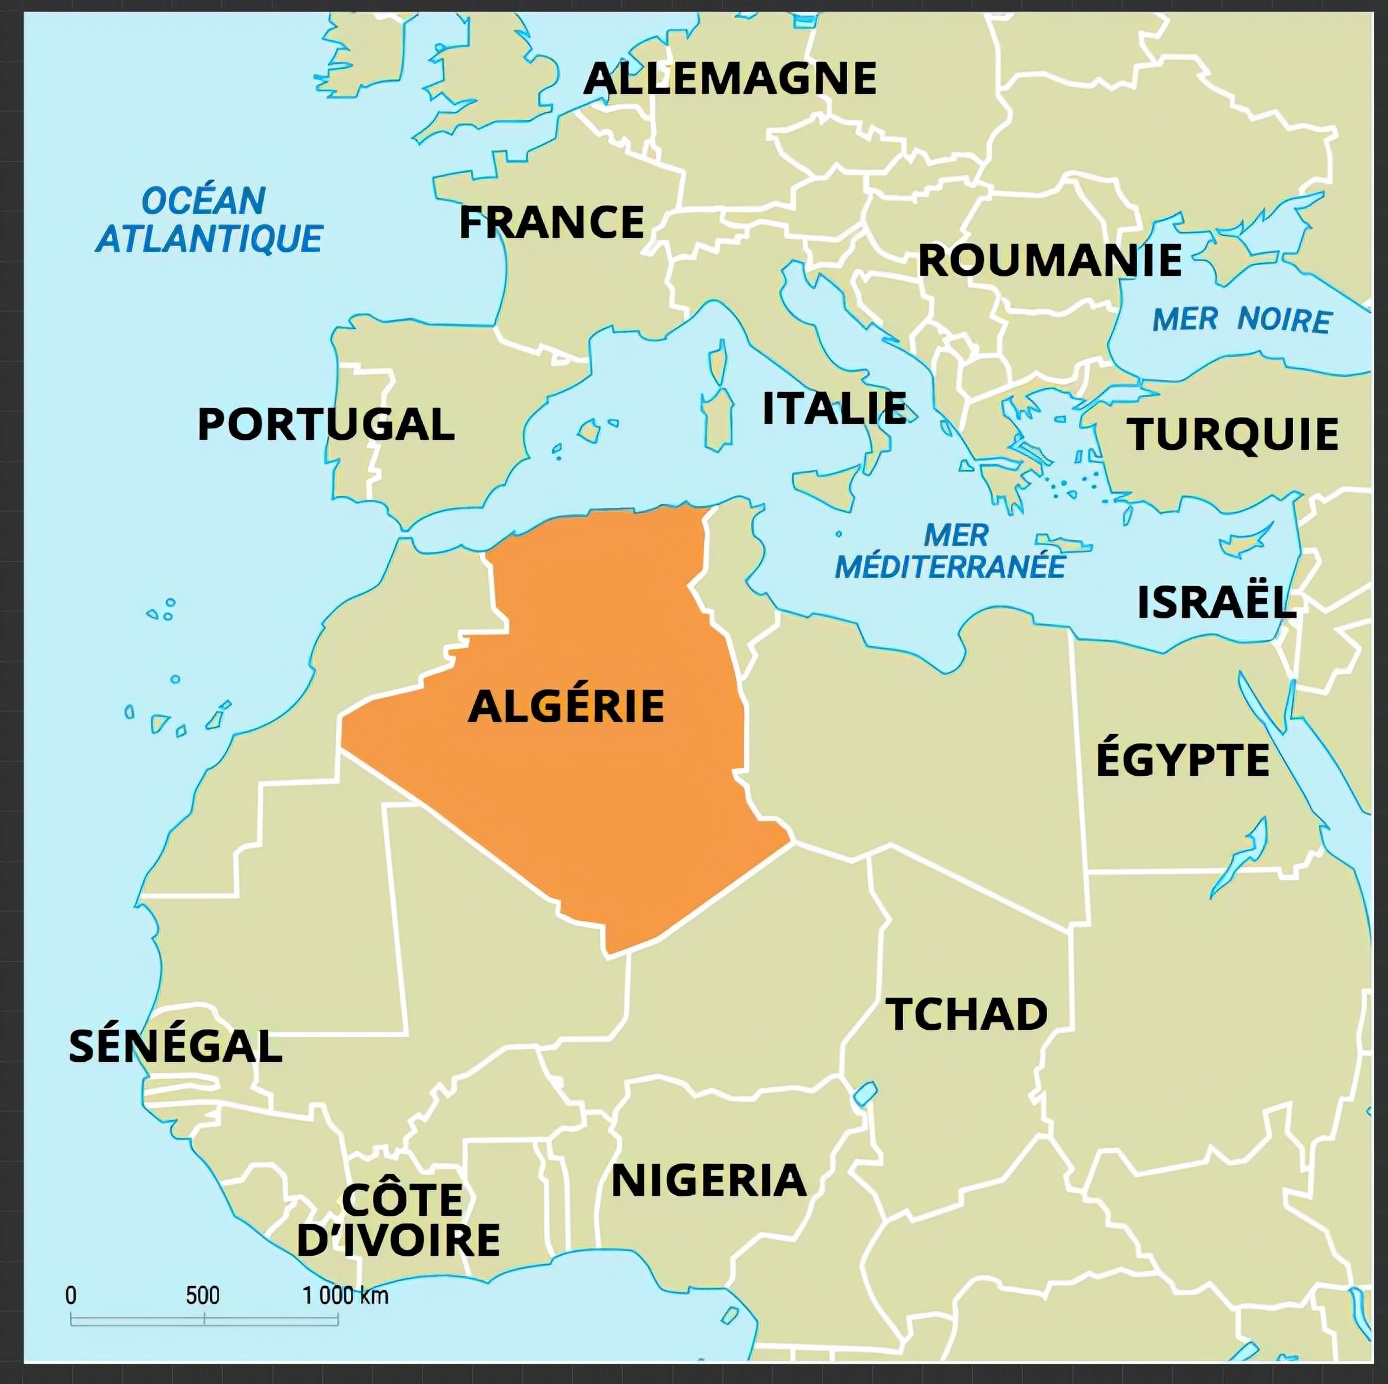 论《黑皮肤、白面具》（4）：阿尔及利亚独立战争